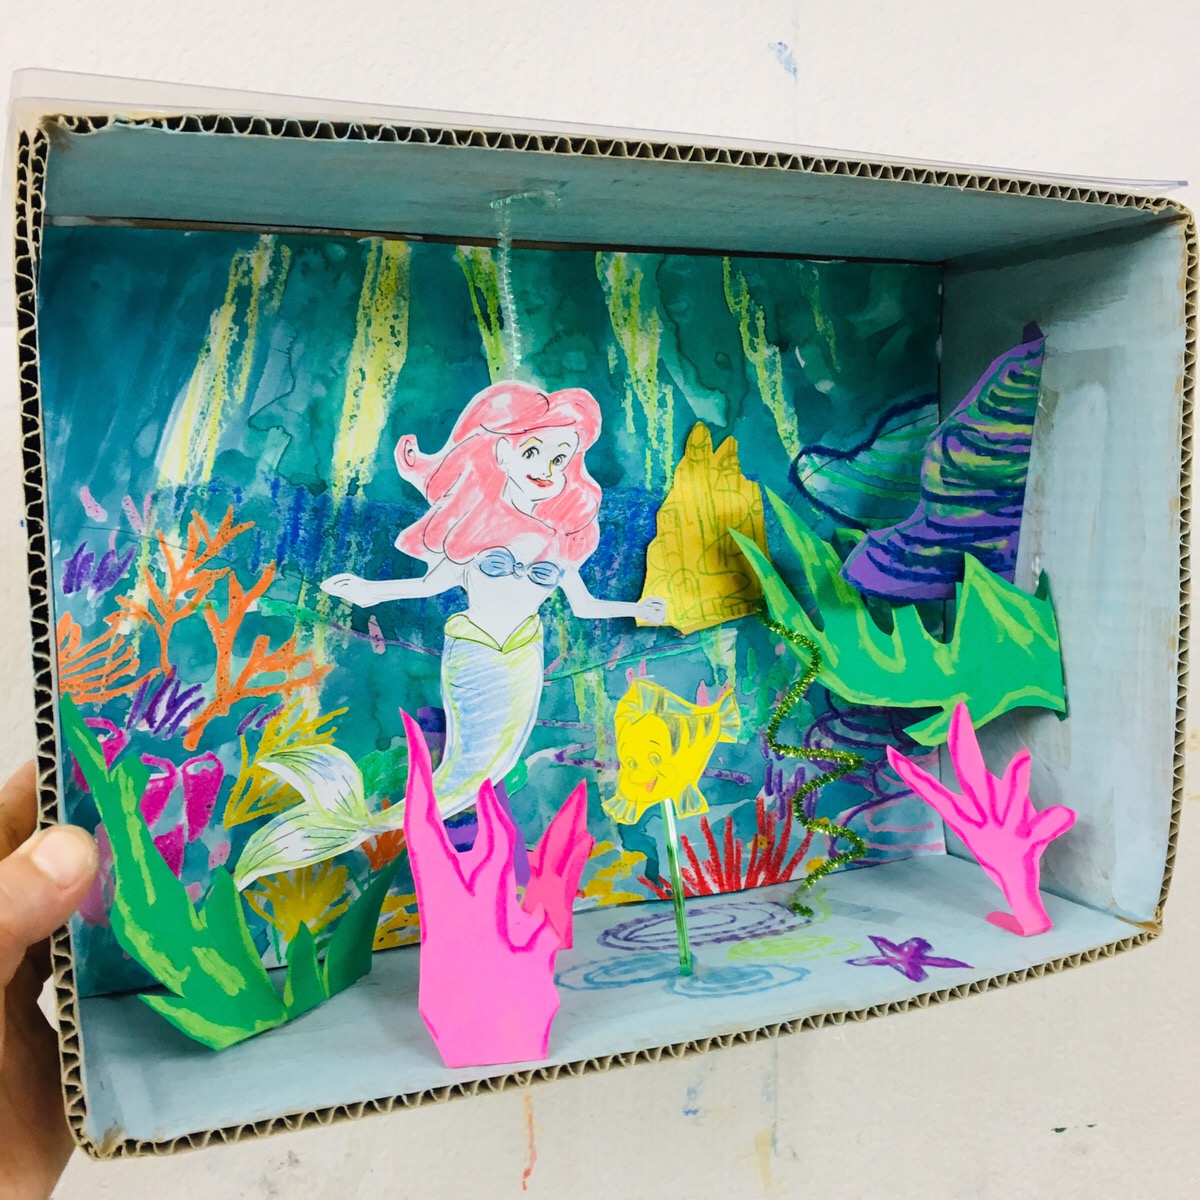 リトルマーメイド 海の世界をジオラマで アリエルのお絵描き 工作 大阪の子供向け絵画教室 モネスク